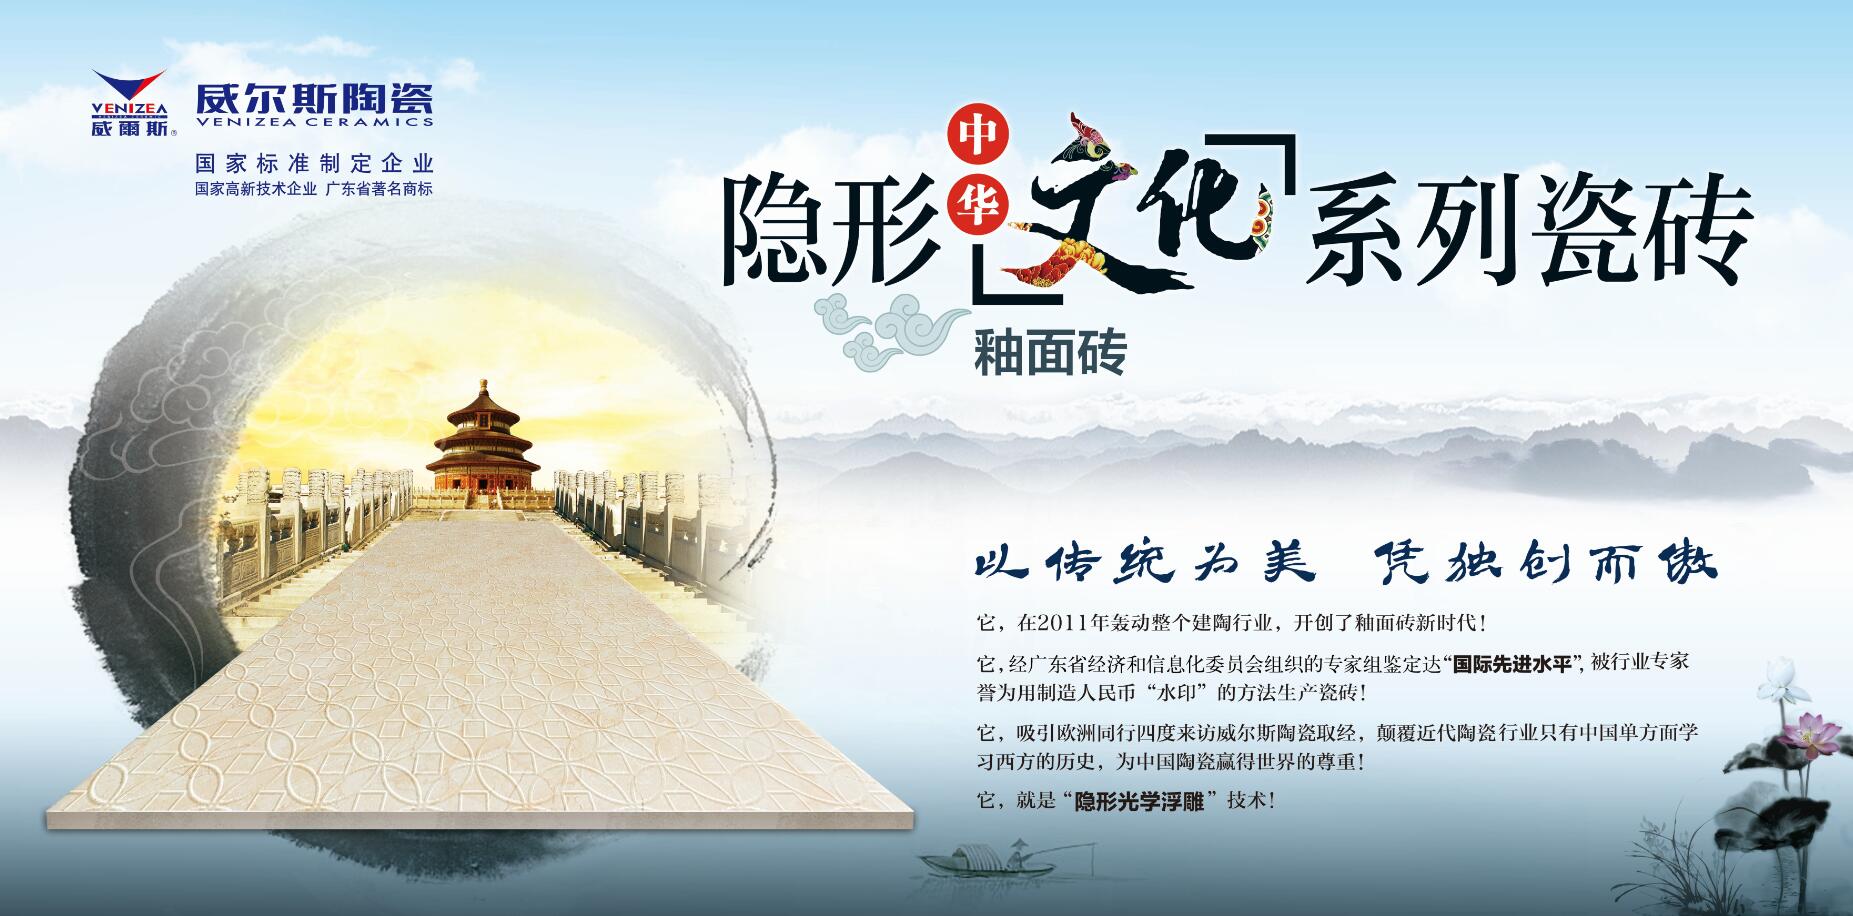 隐形中华文化系列瓷砖之“梅兰竹菊”系列产品